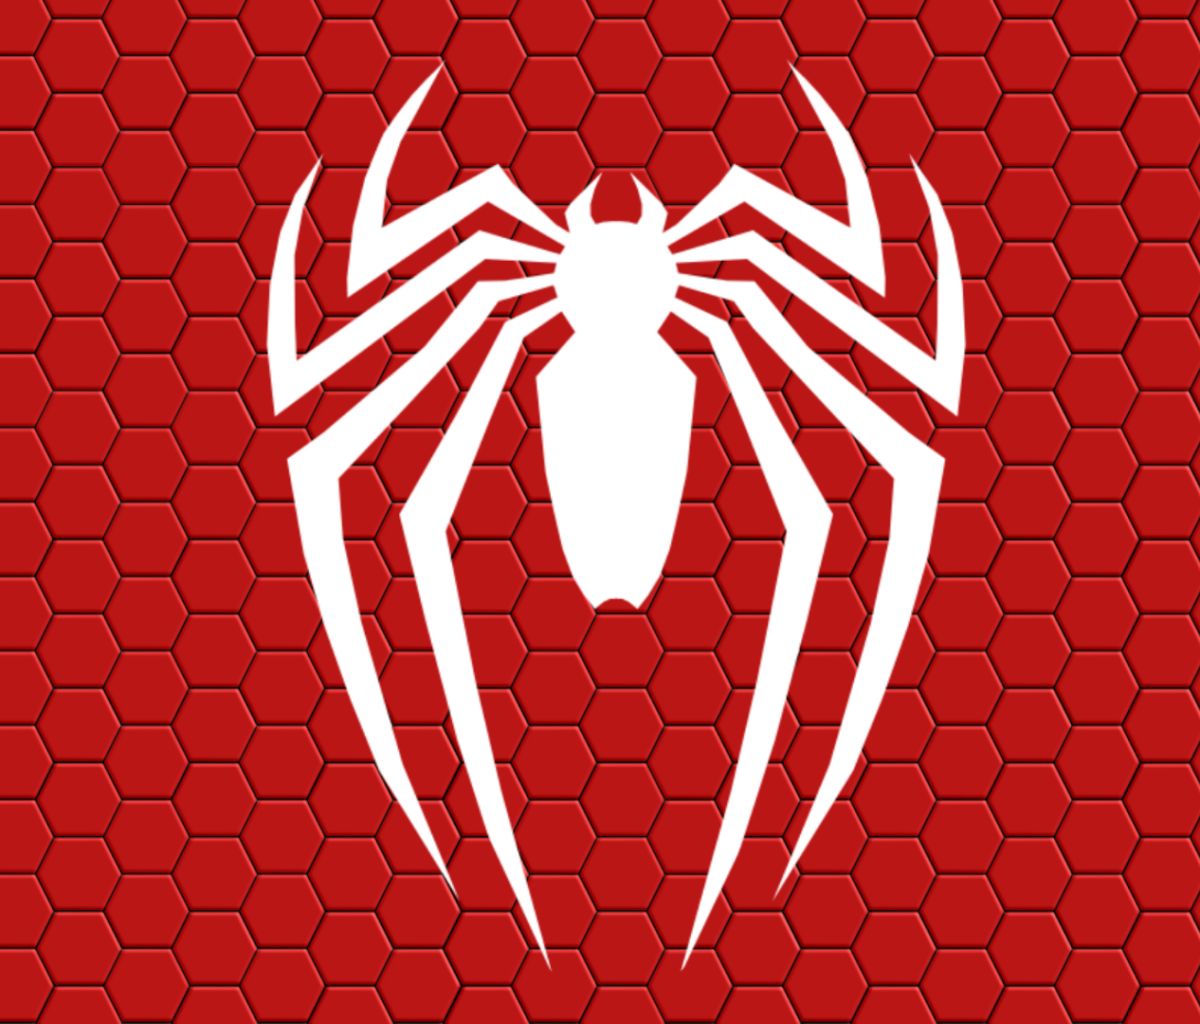 Descarga gratuita de fondo de pantalla para móvil de Videojuego, Hombre Araña, Spider Man, Hombre Araña (Ps4).